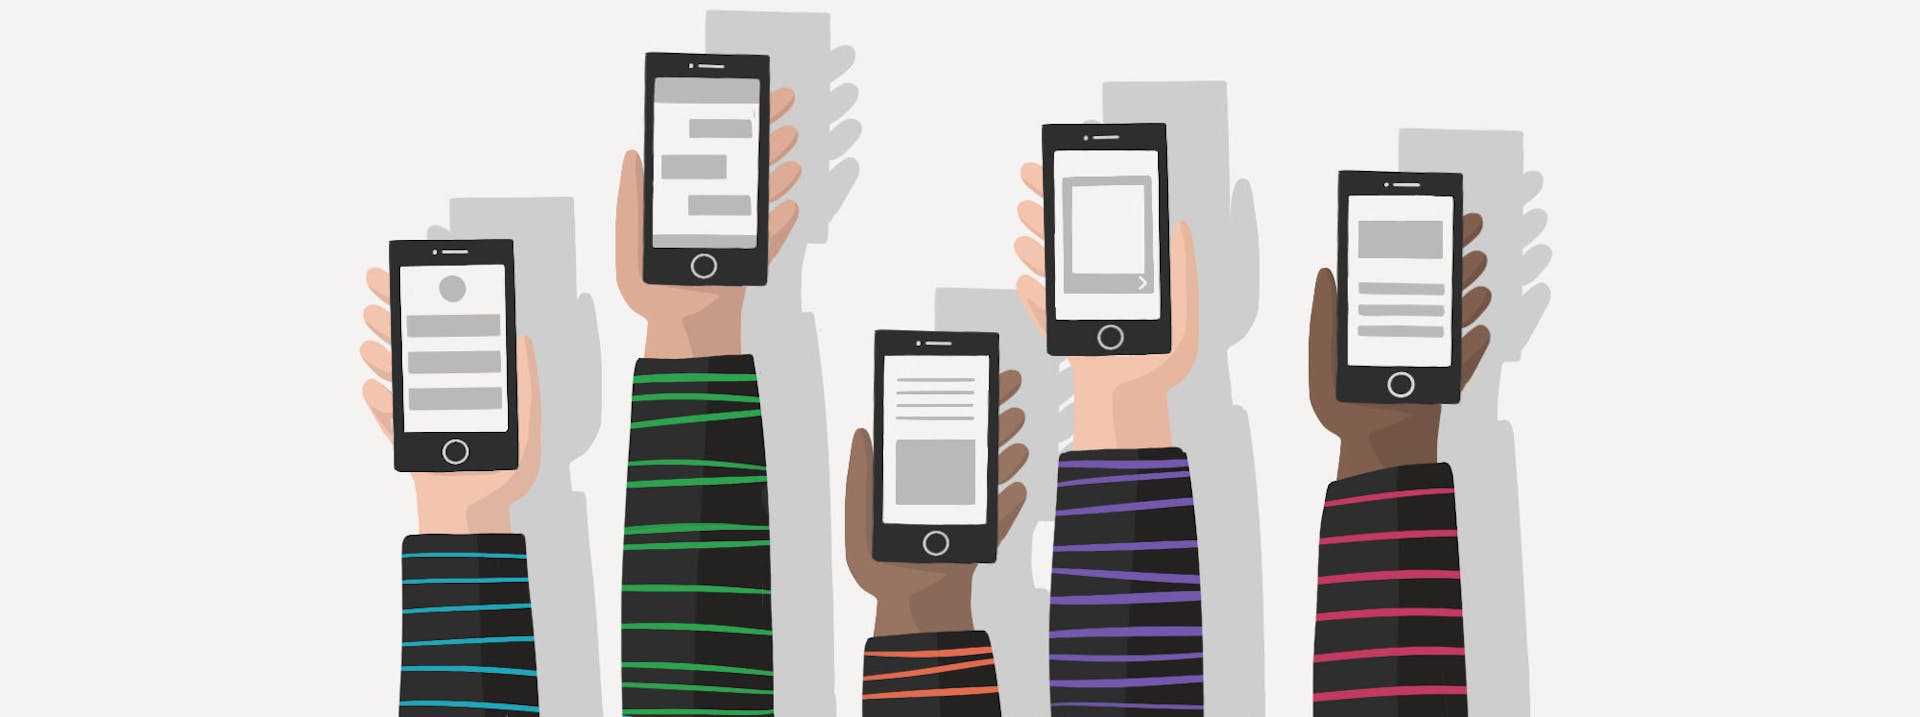 Illustration of five hands holding up smartphones